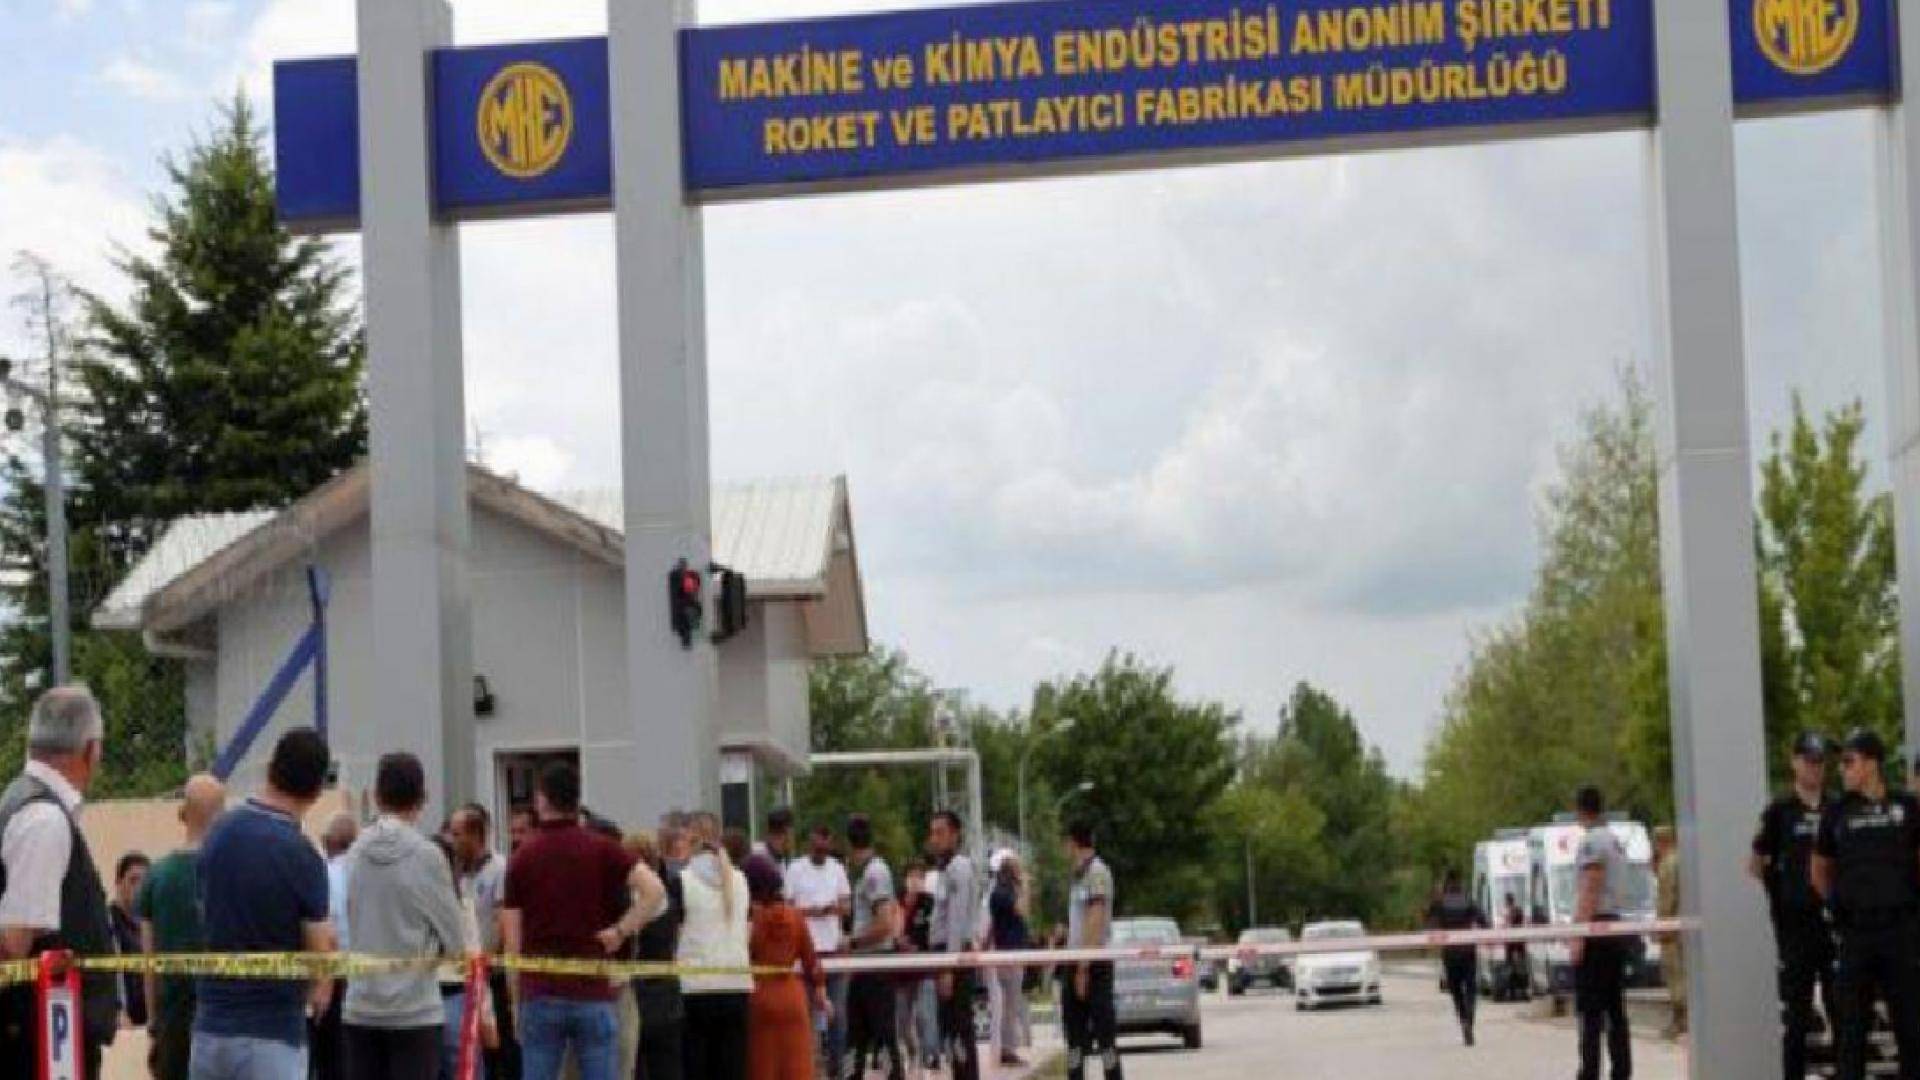 MKE Fabrikası’nda patlamada 5 işçi hayatını kaybetti